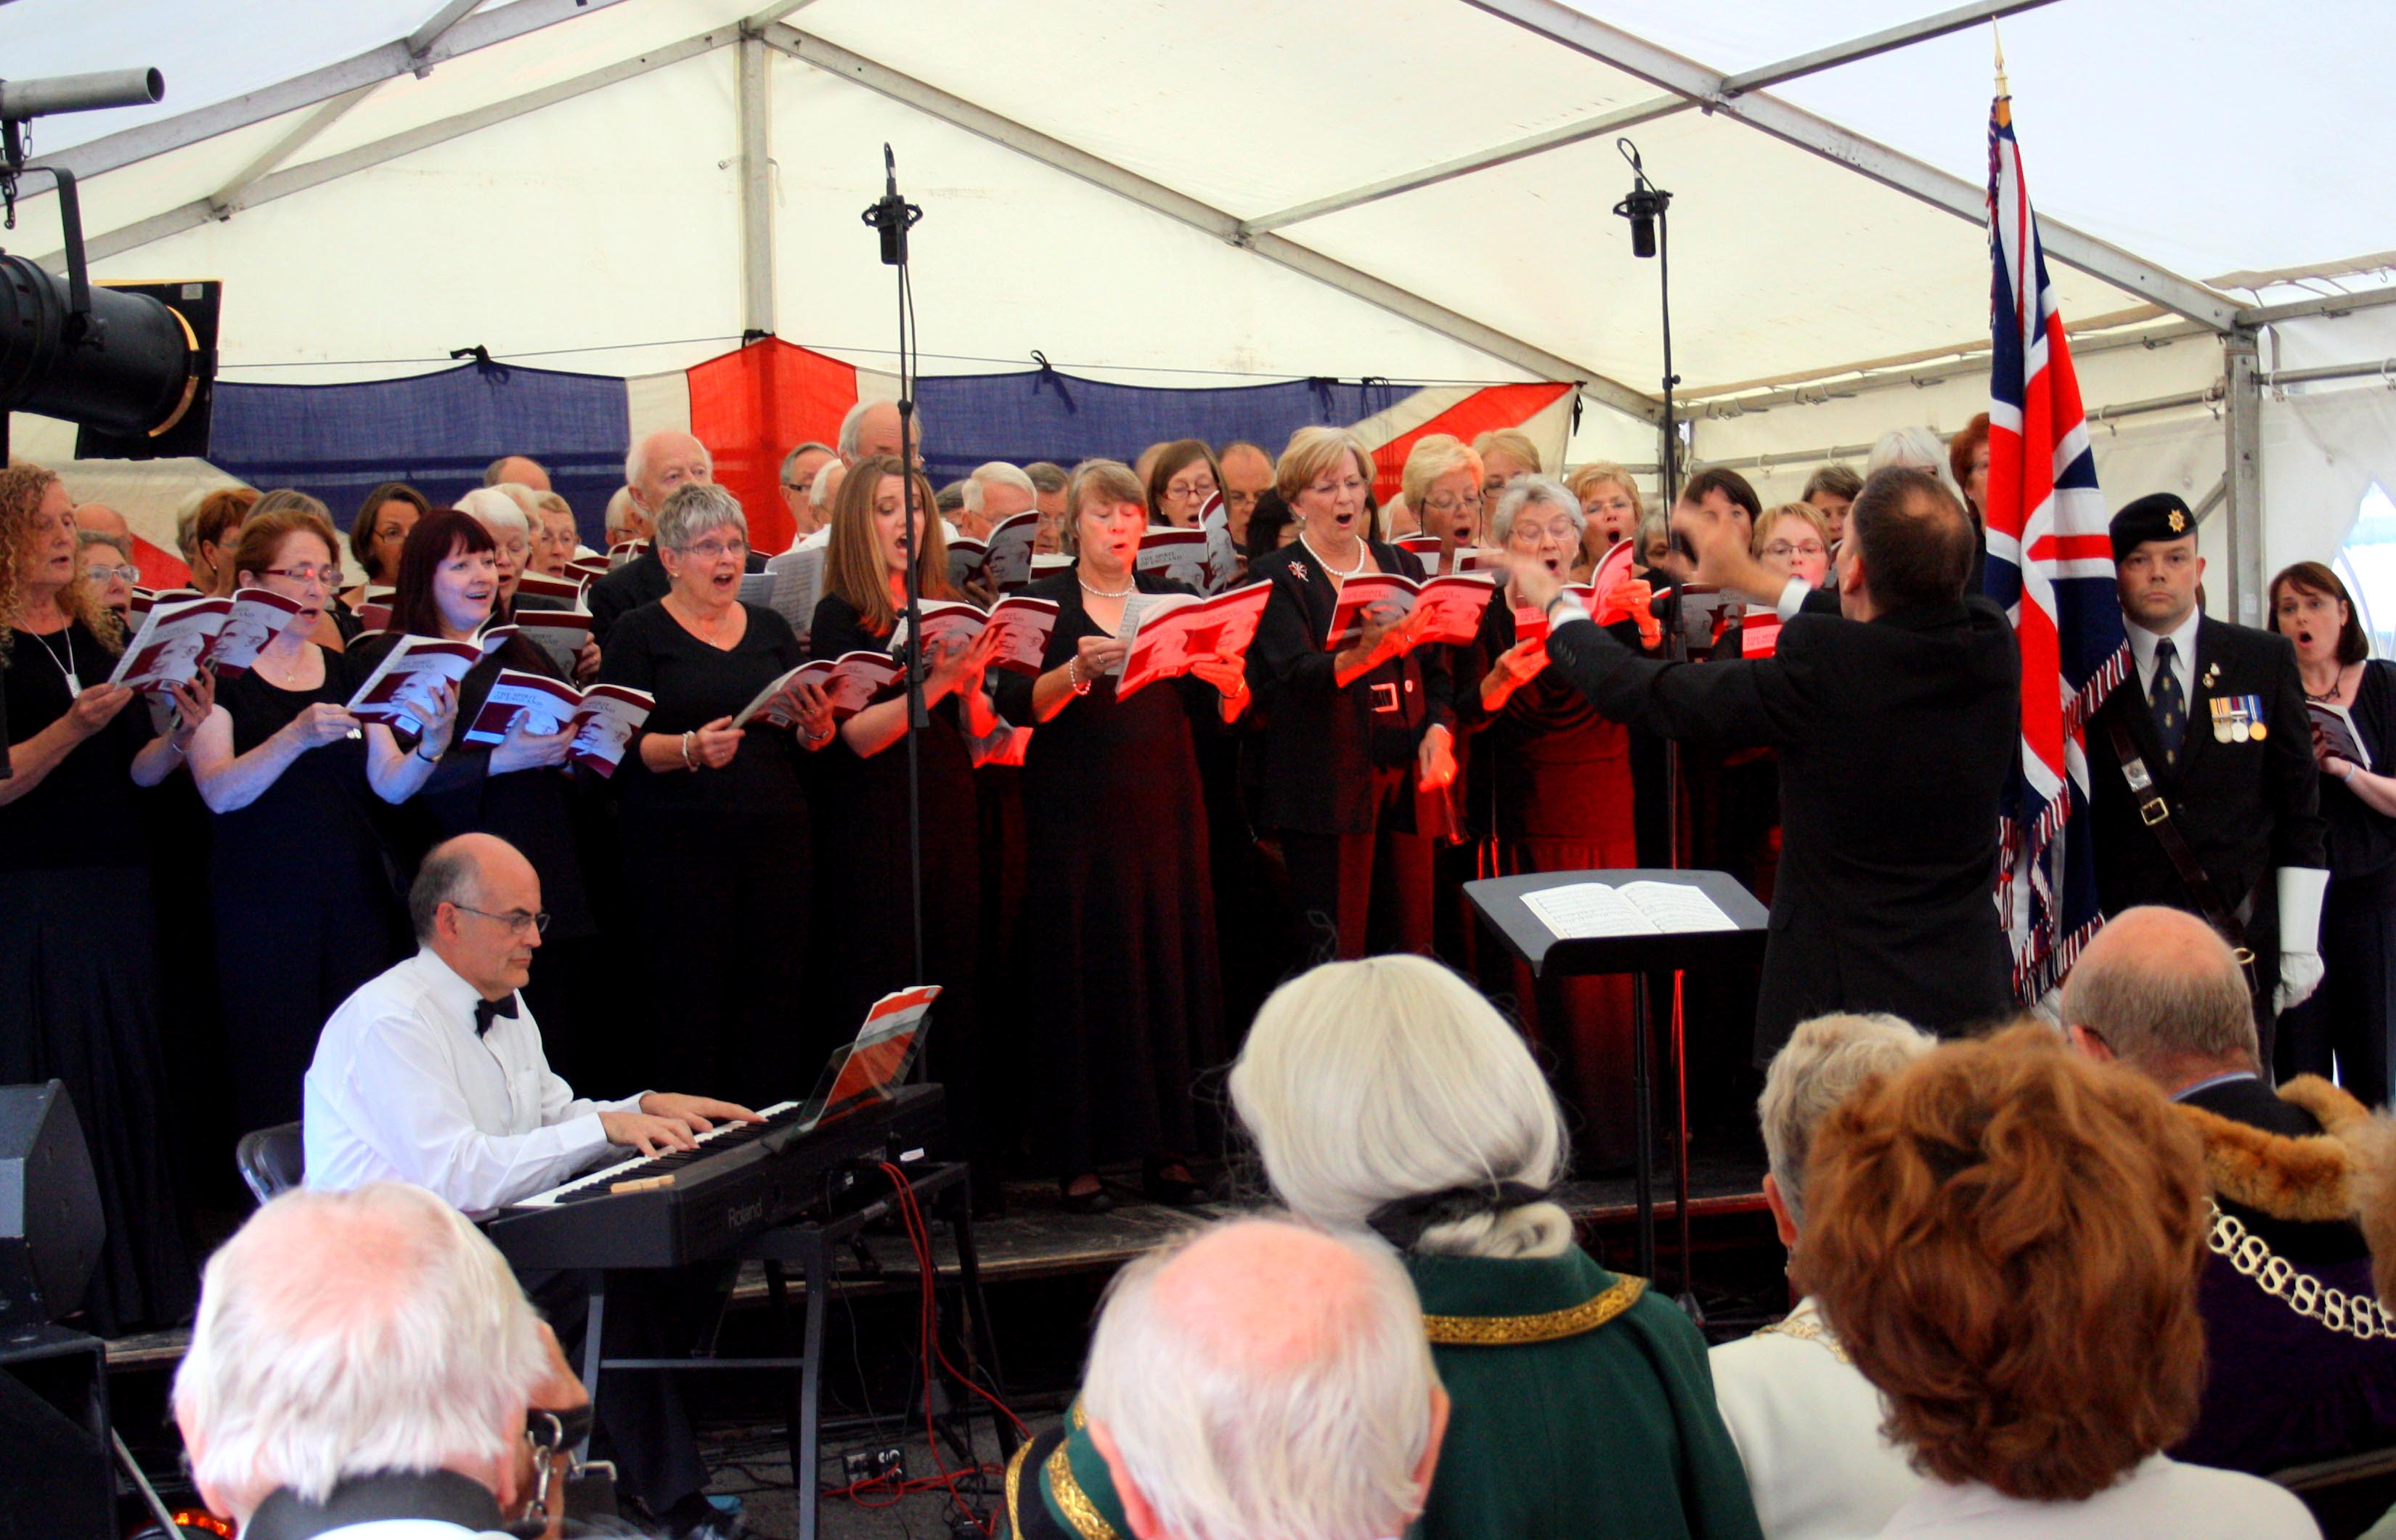 commemoration festival - stamford choral society 4-8-14.jpg